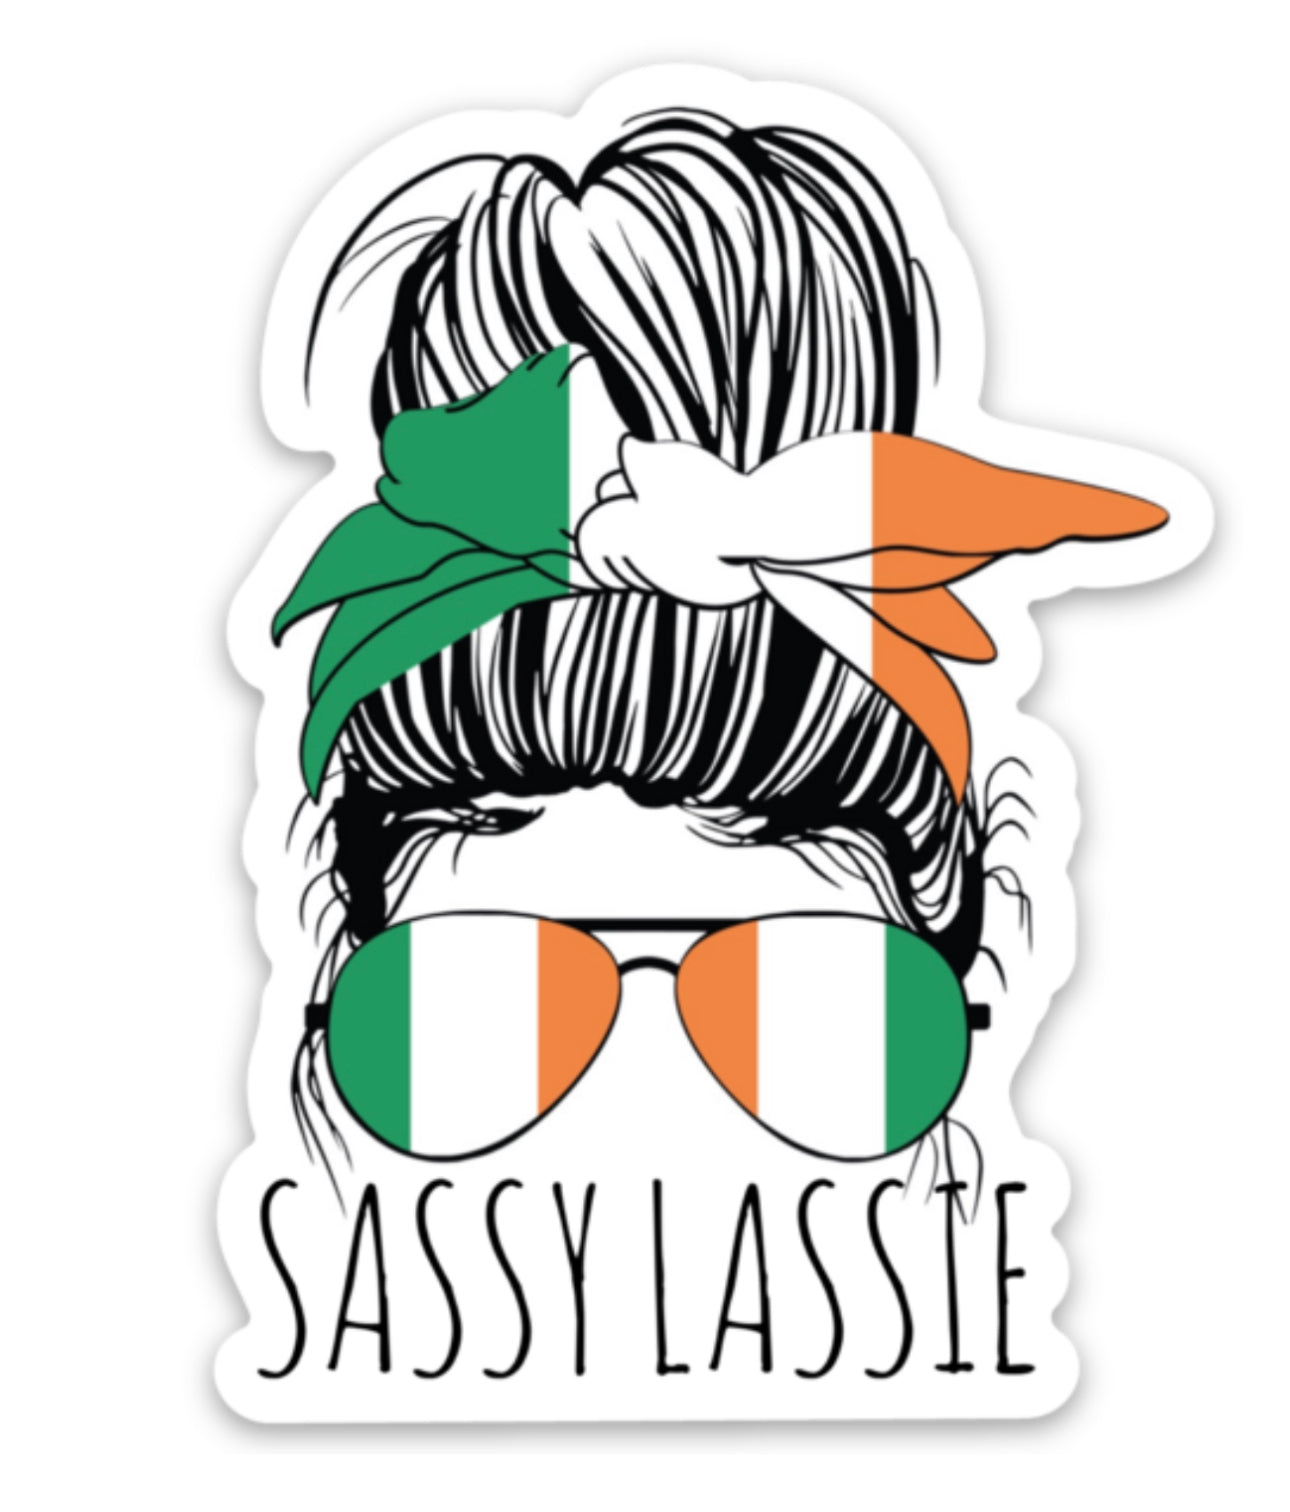 Irish Sassy Lassie Messy Bun Aviators 3" Sticker